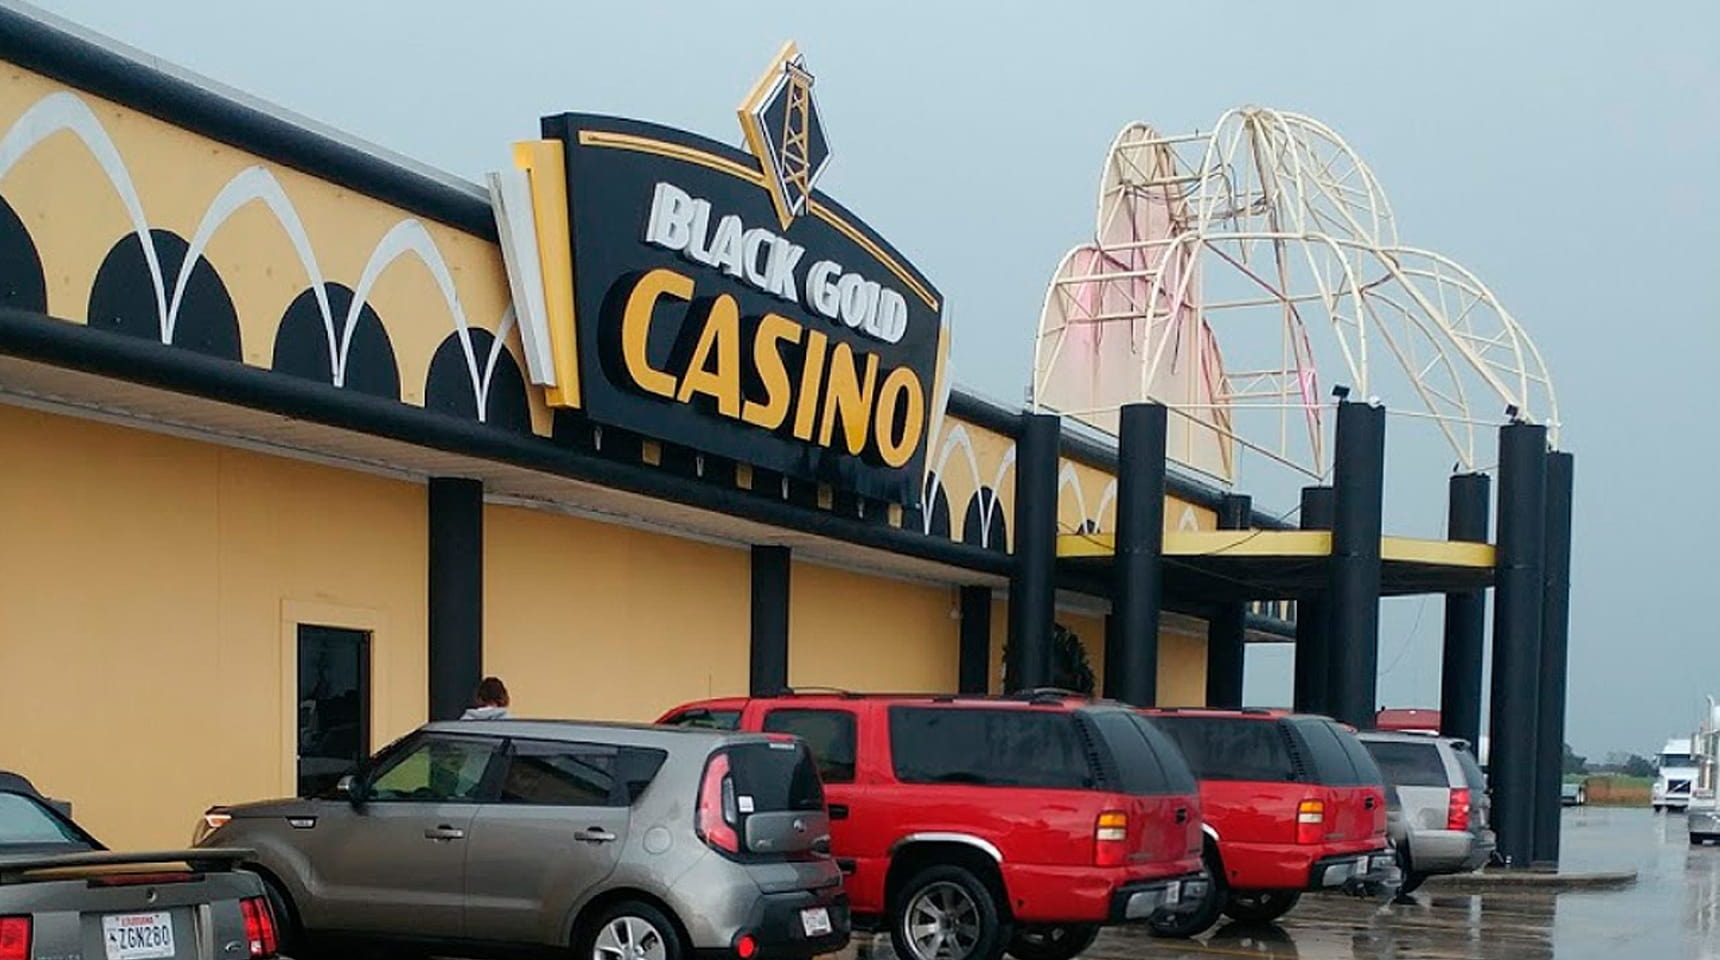 black gold casino hobbs